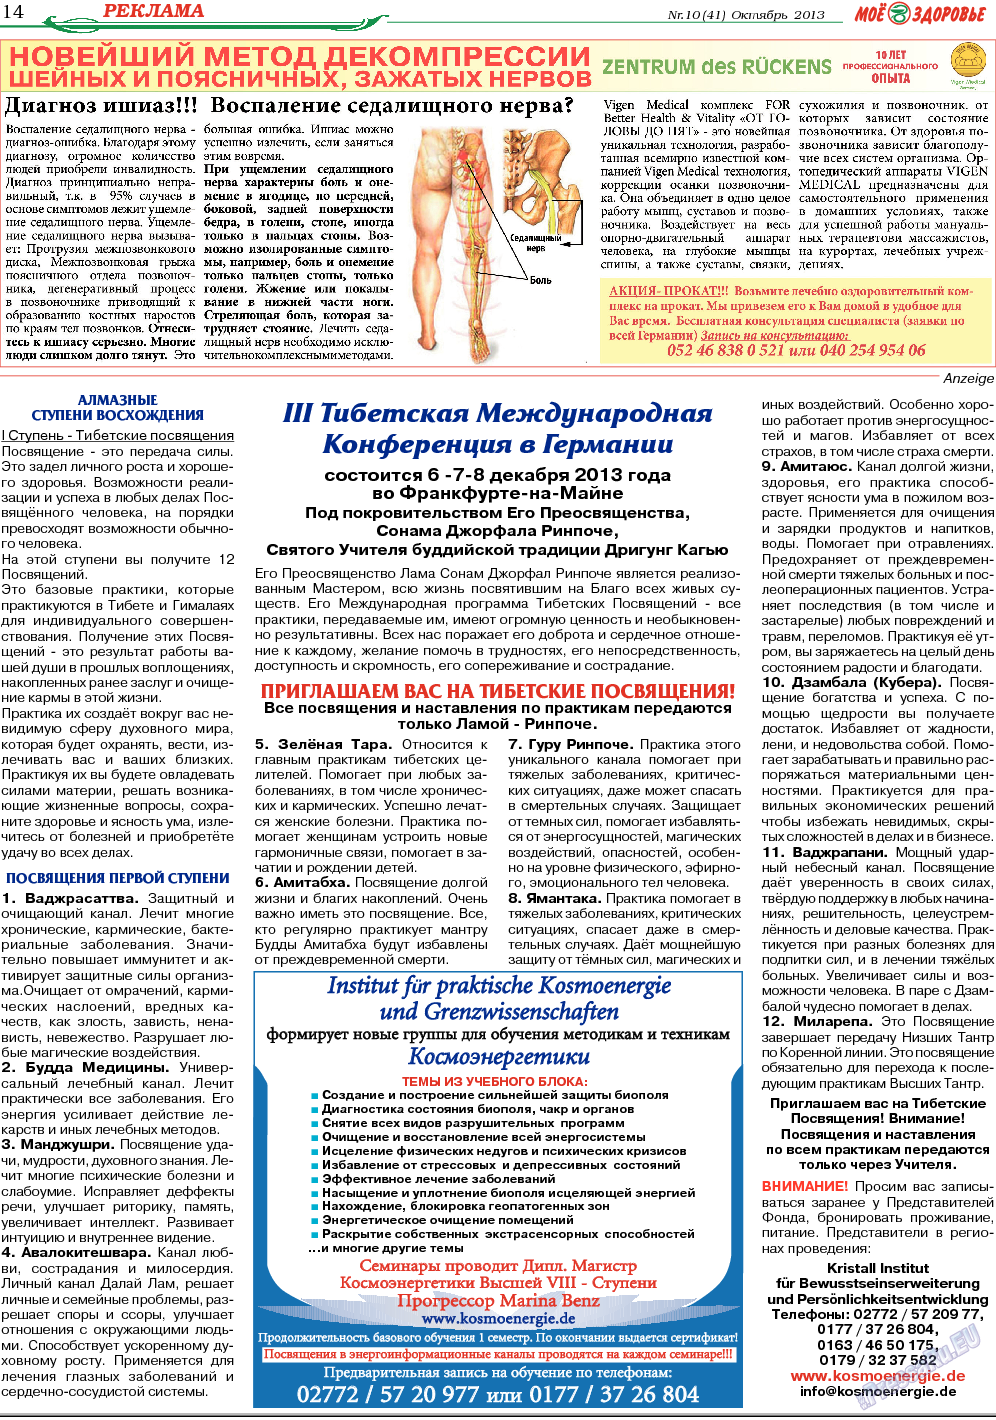 Кругозор, газета. 2013 №10 стр.14